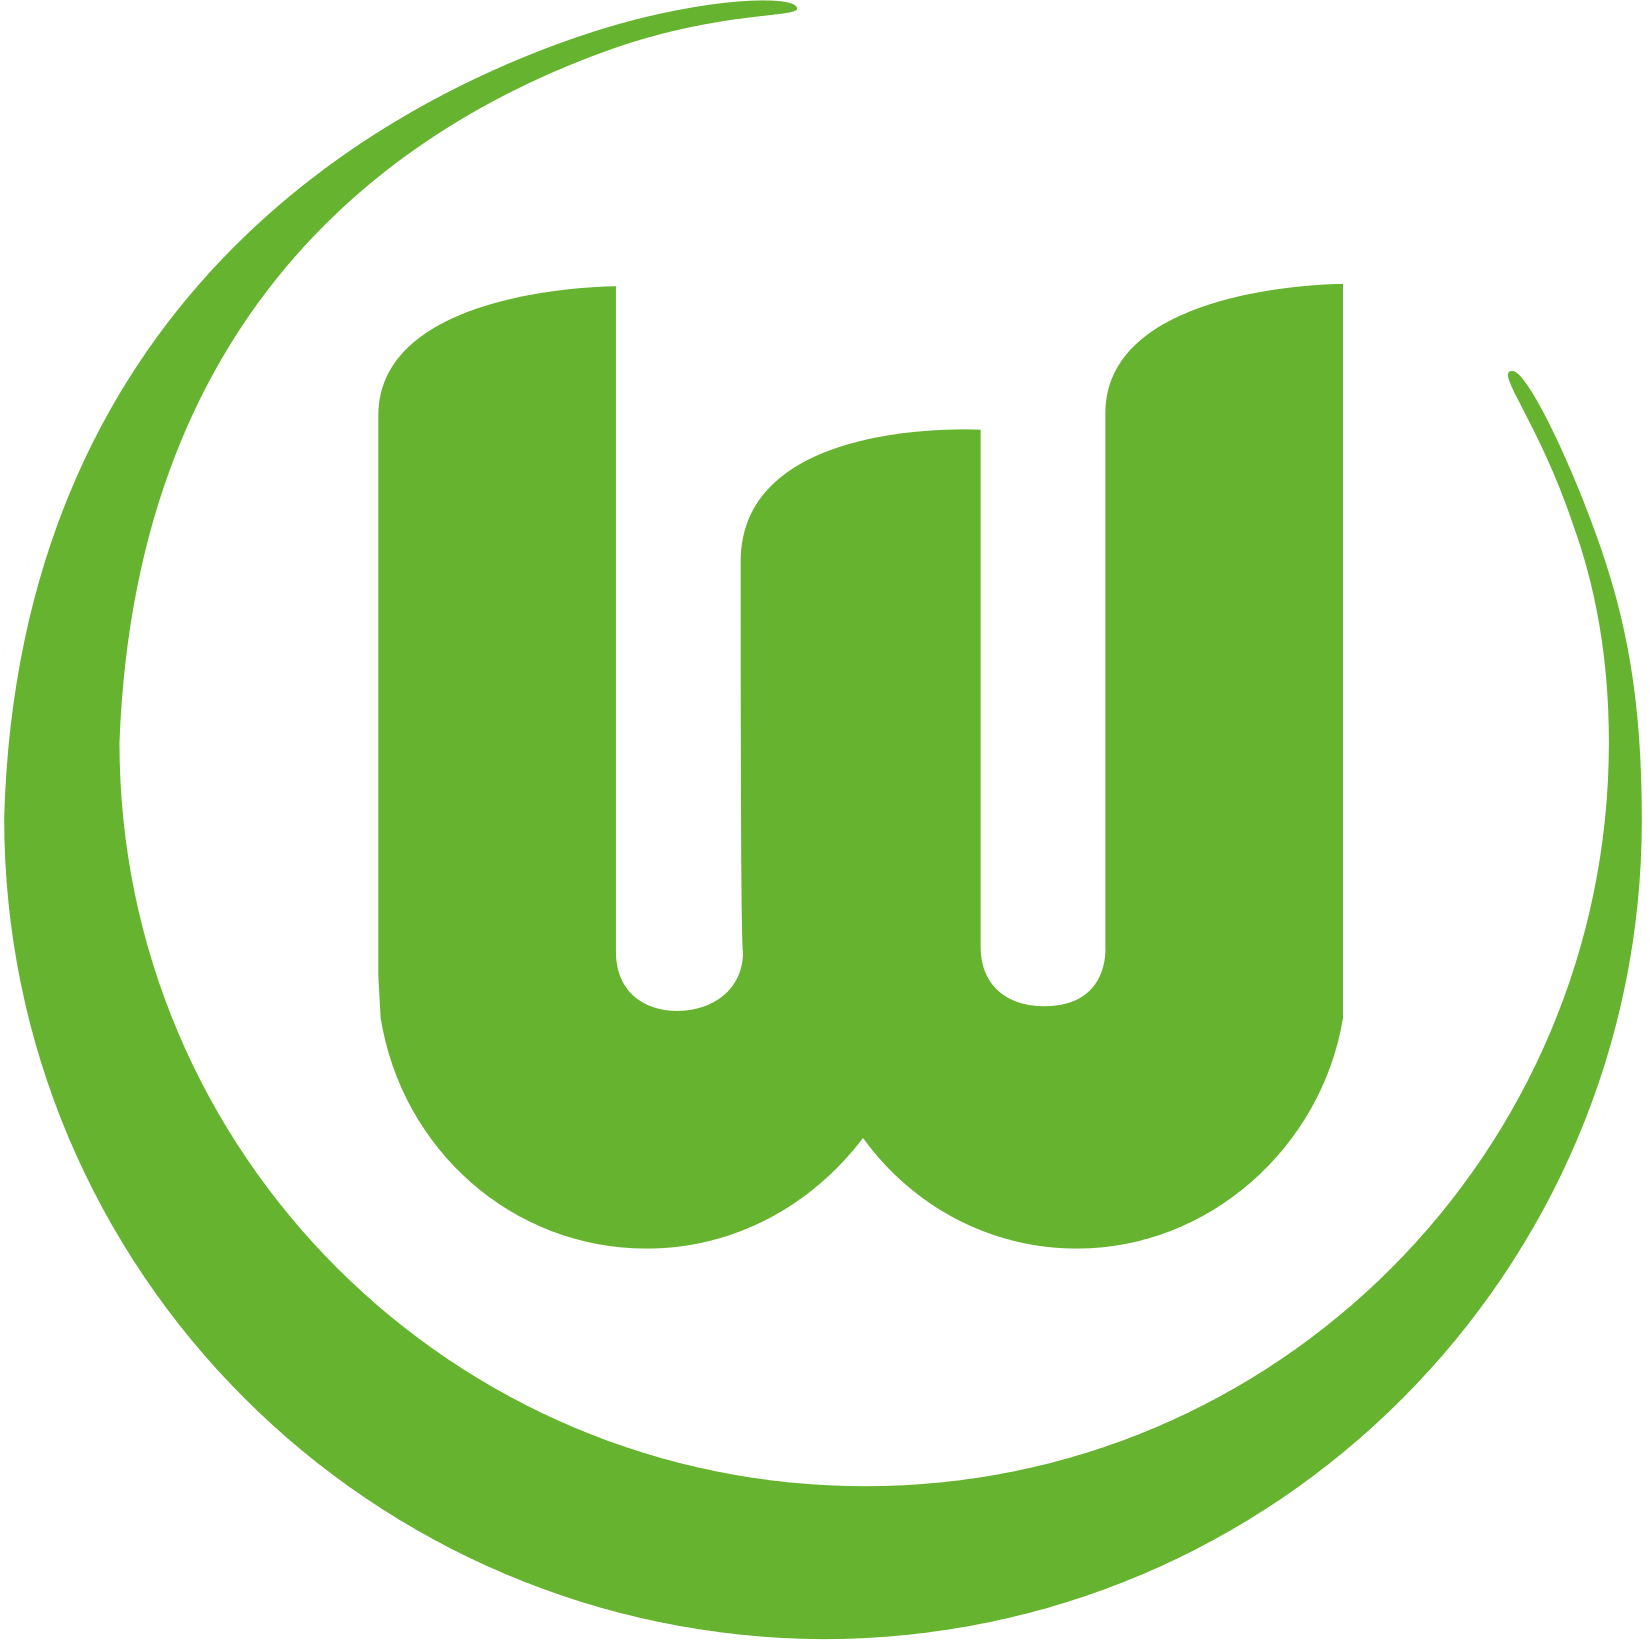 Wappen VfL Wolfsburg 1945 diverse  10037